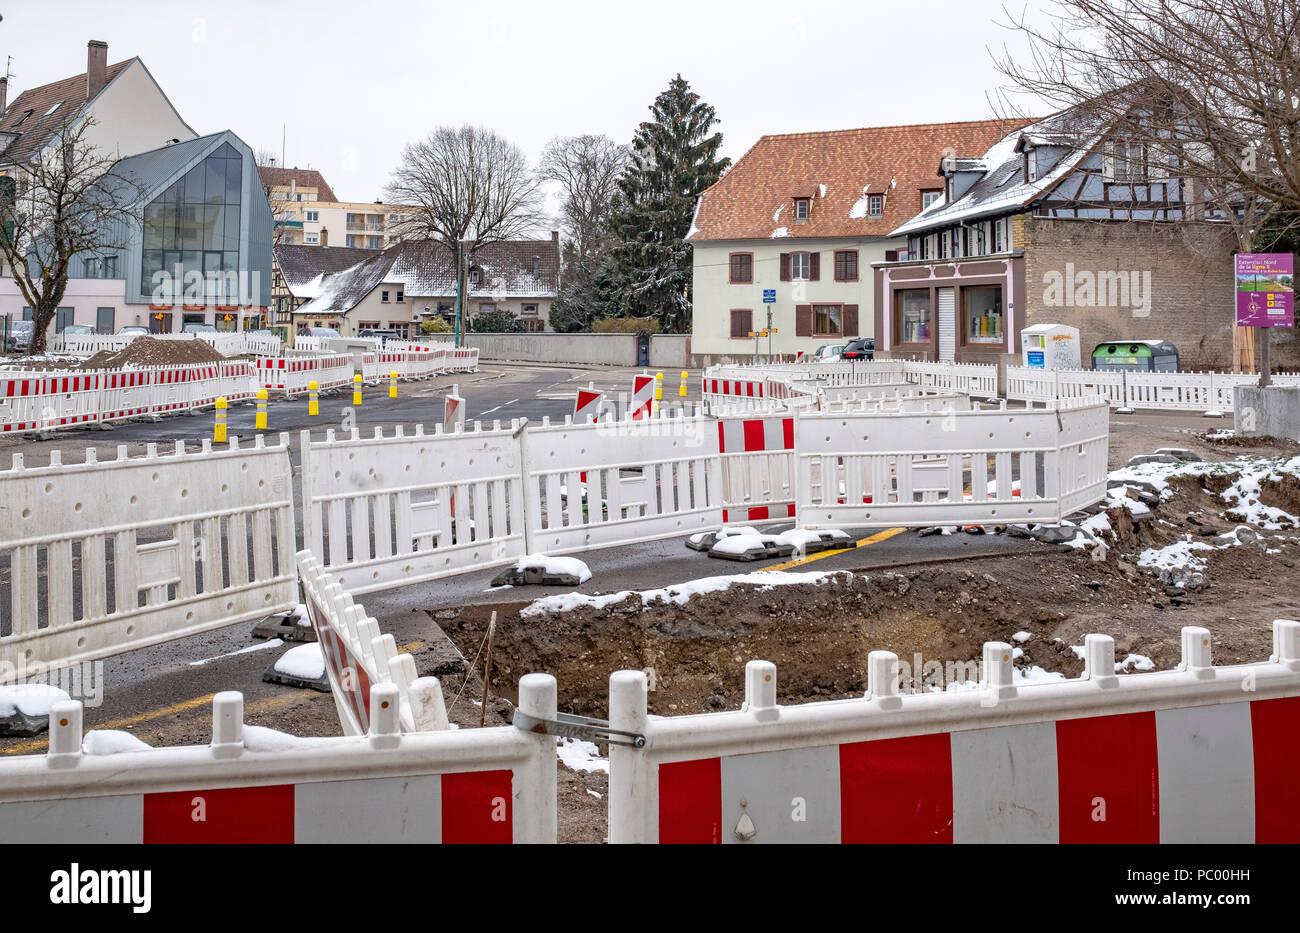 Strasburgo, tram preliminare sito in costruzione, linea e estensione, sicurezza barriere in plastica, street, case, Alsazia, Francia, Europa Foto Stock